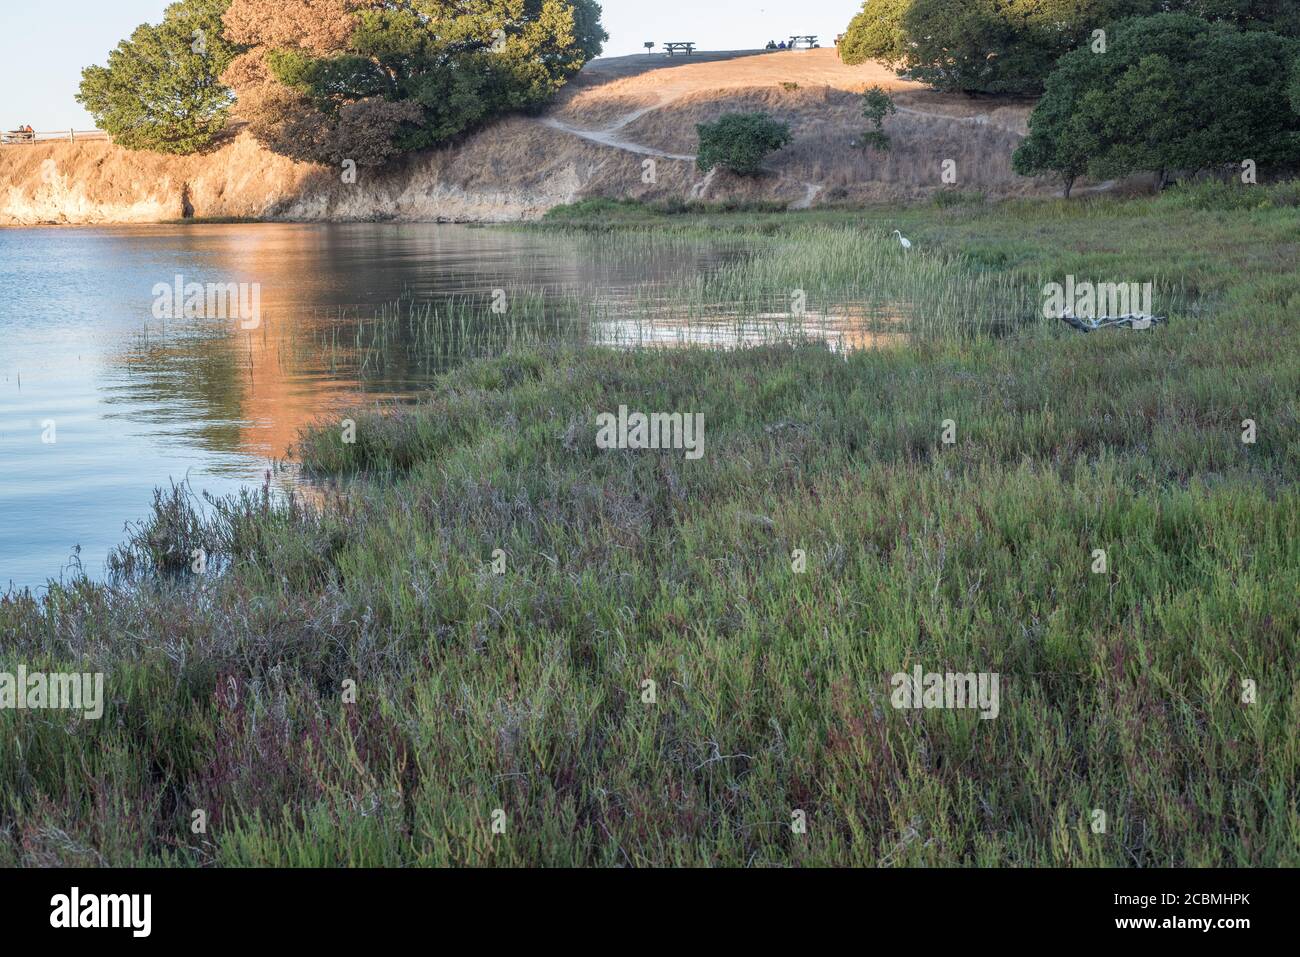 Un marais salé dans le parc national de China Camp en Californie, habitat important pour certaines espèces menacées. Banque D'Images